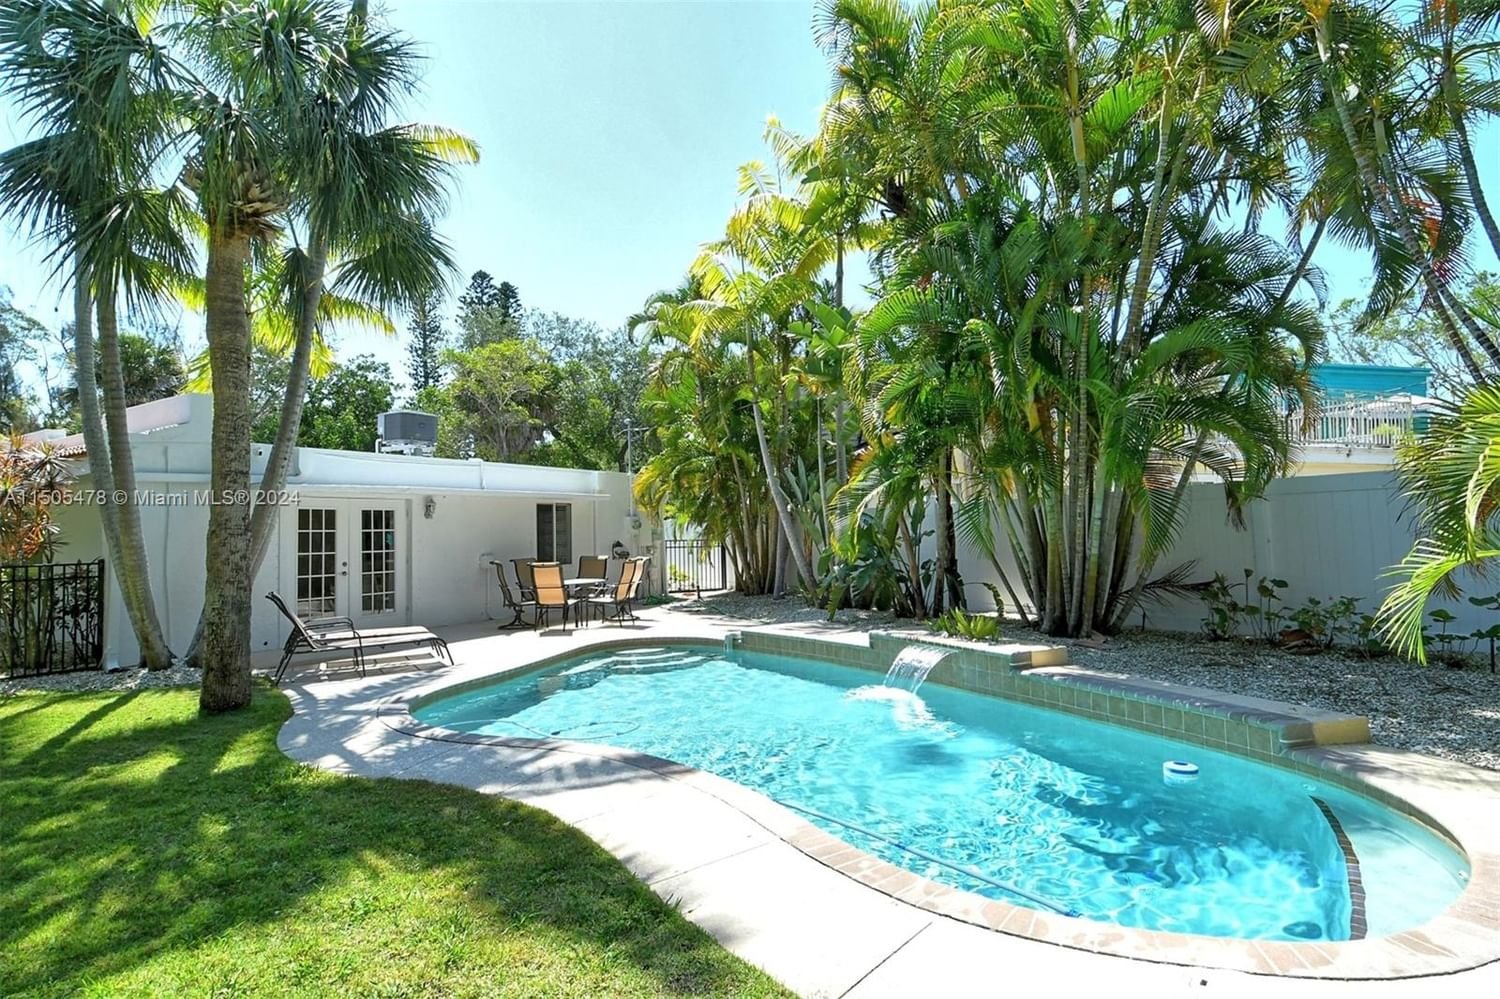 Real estate property located at 656 Avenida De Mayo, Sarasota County, Sarasota Beach, Sarasota, FL